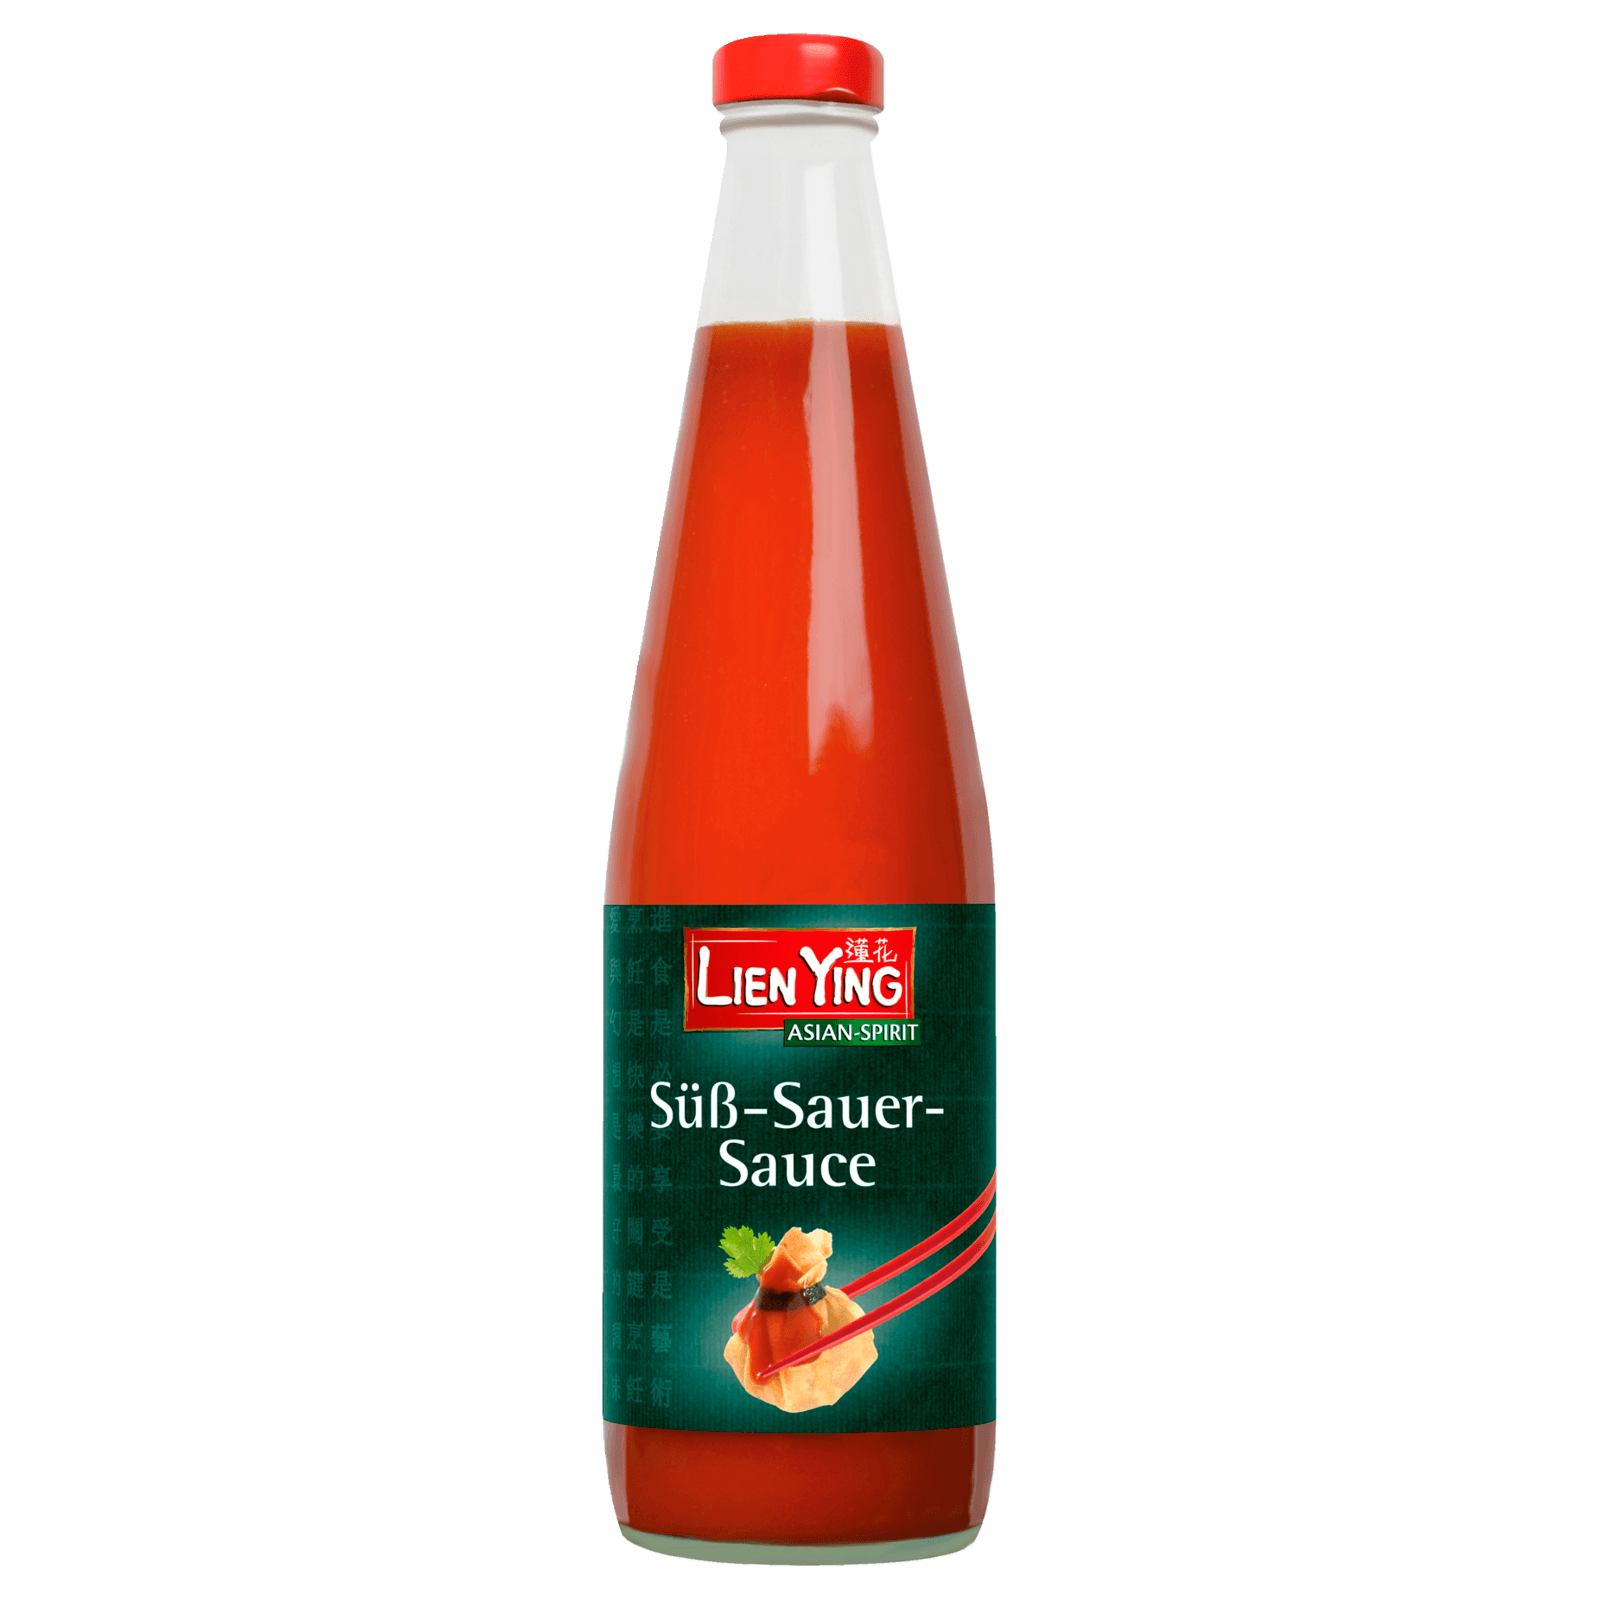 Lien Ying Süß-sauer-Sauce 700ml bei REWE online bestellen!